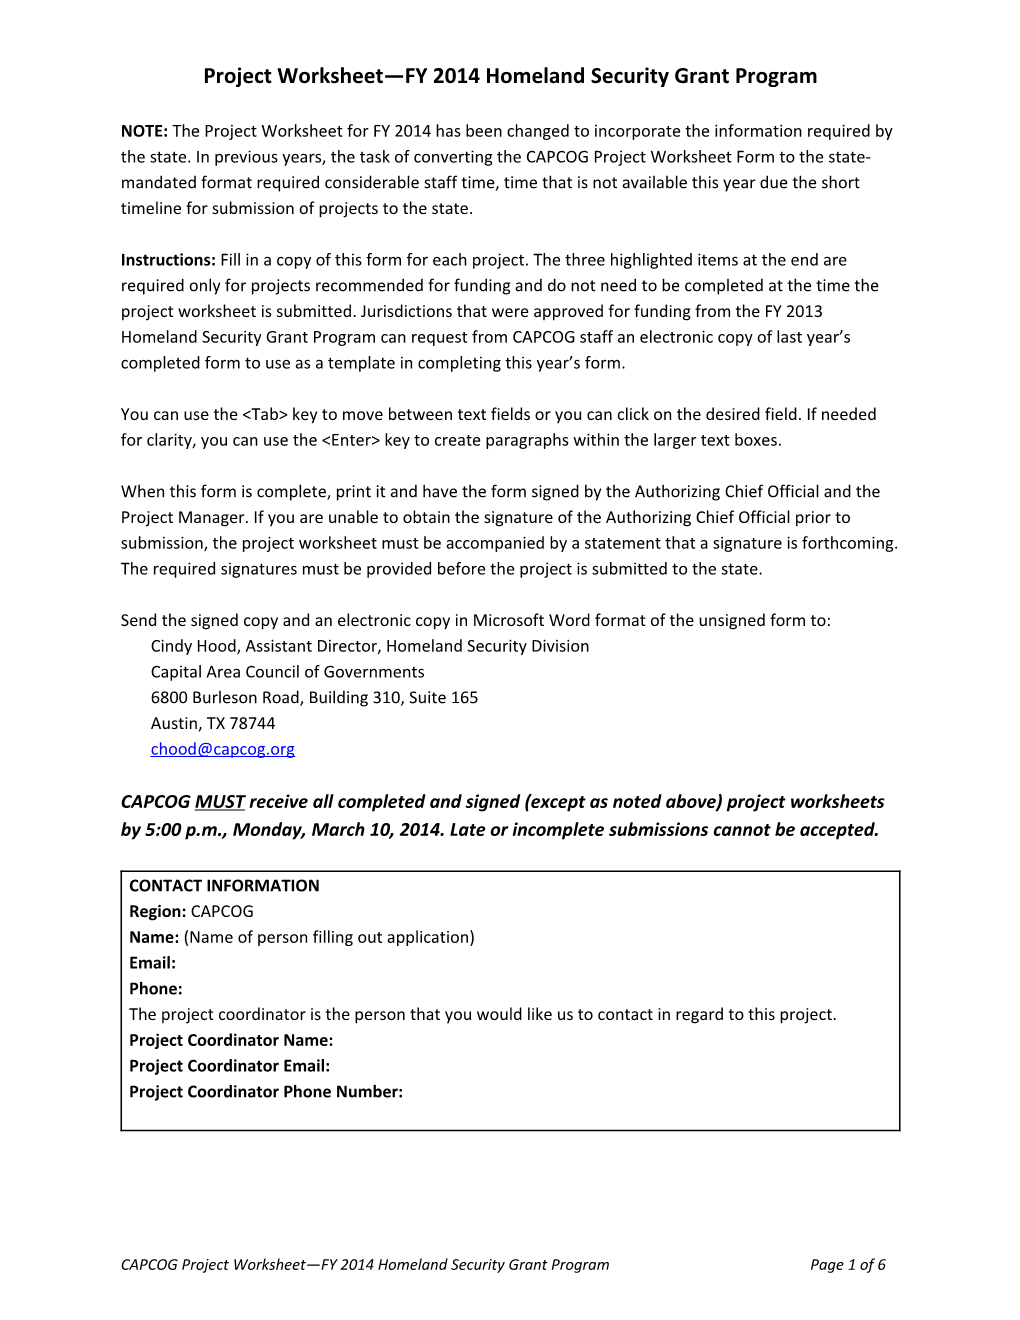 Project Worksheet FY2014 Homeland Security Grant Program